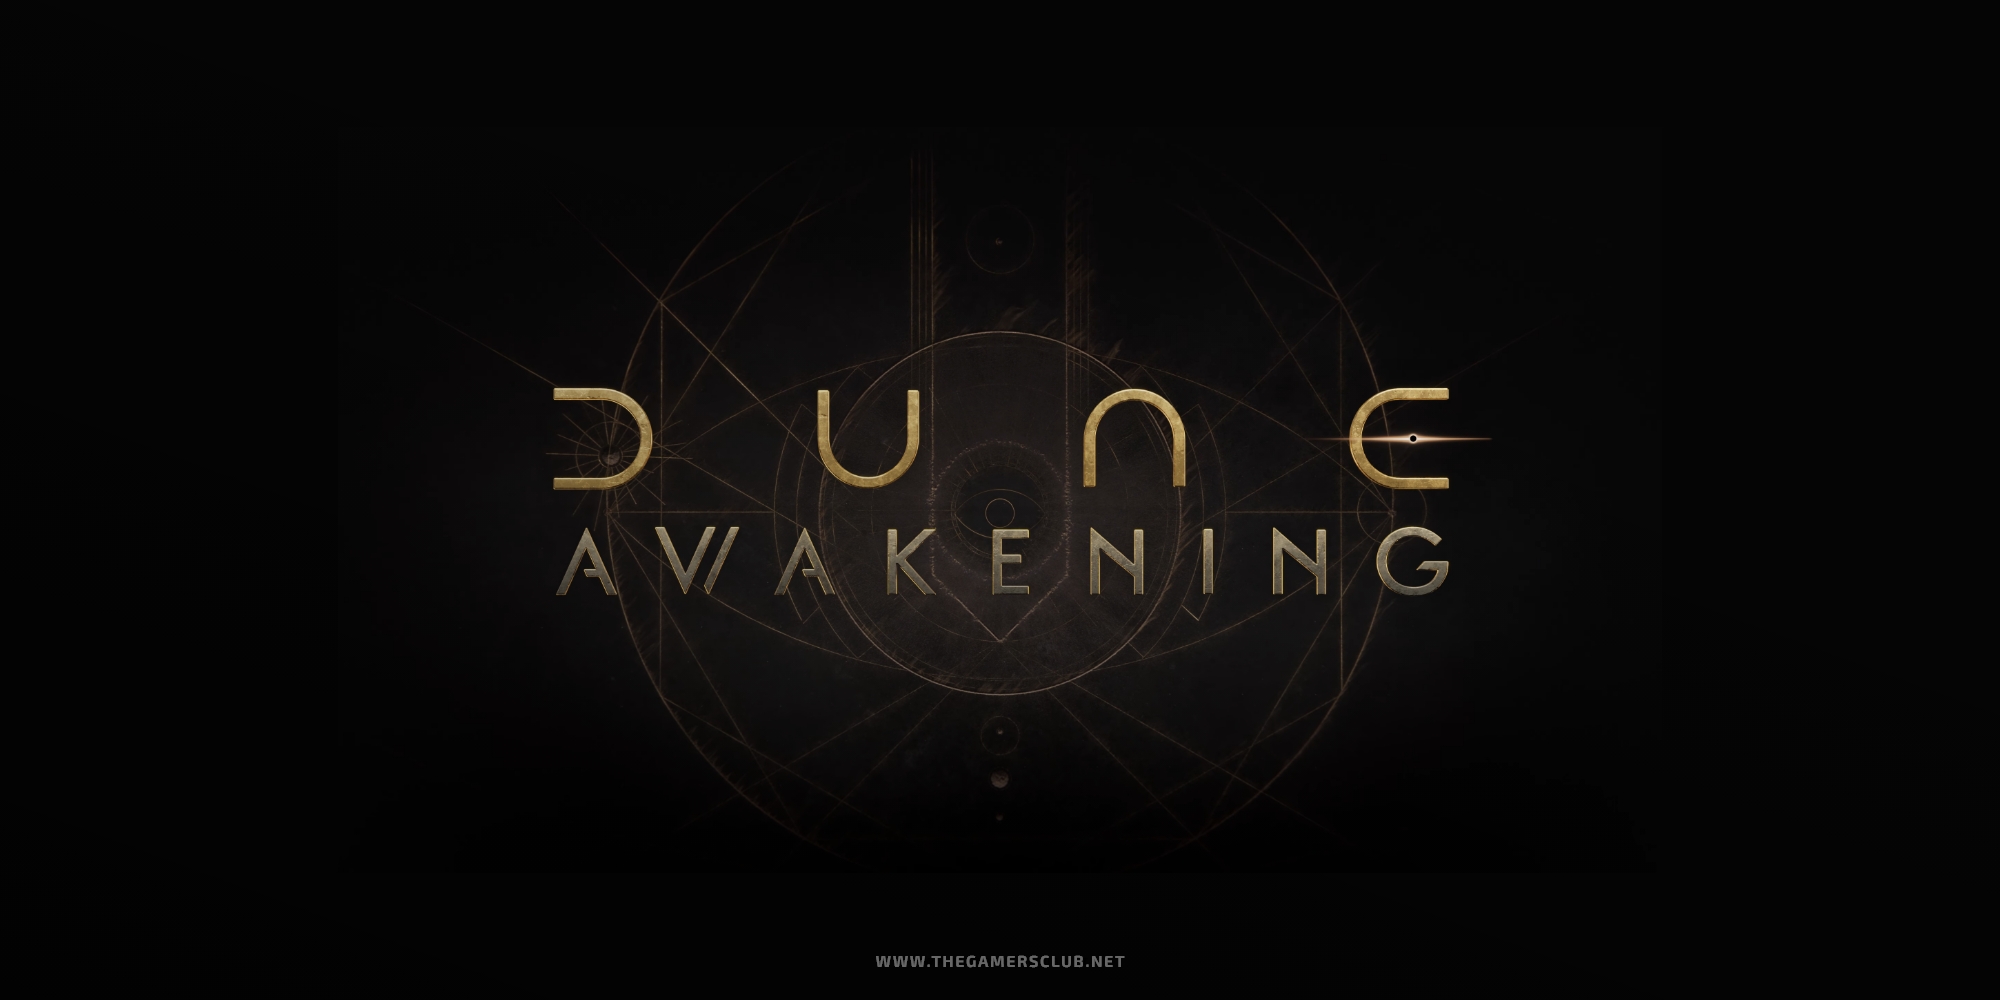 Dune Awakening Trailer Breakdown - TheGamersClubNet